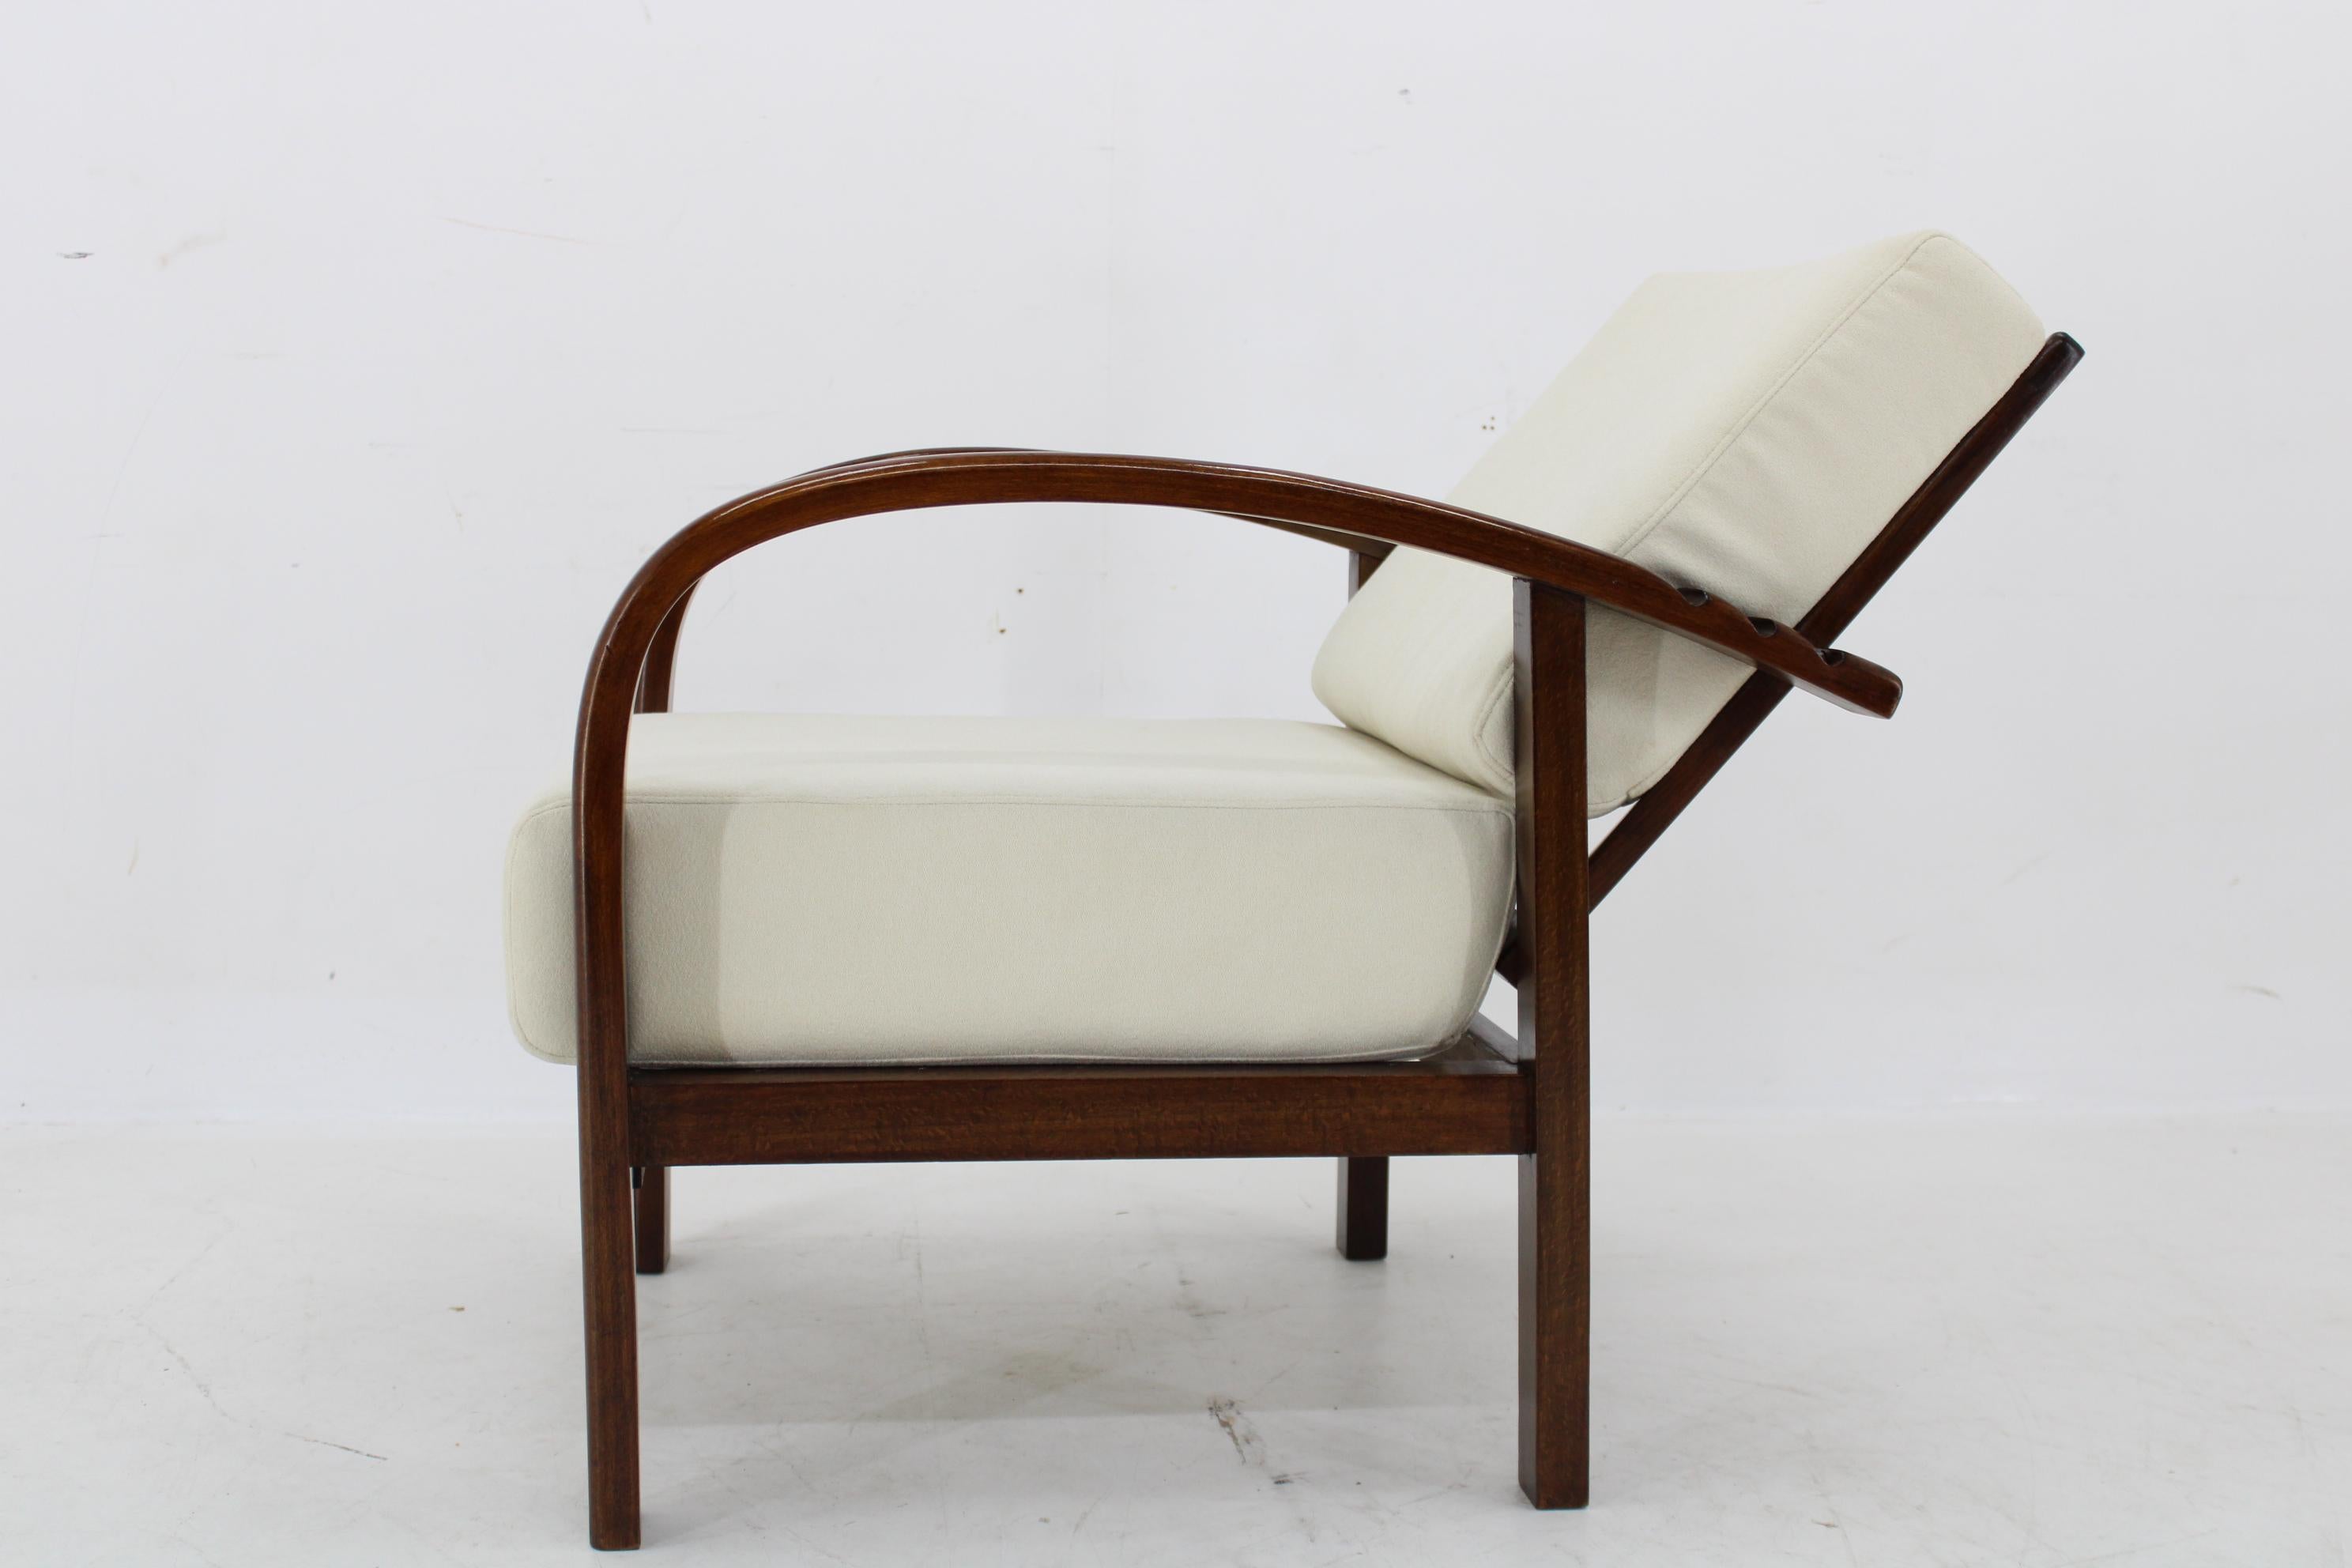 1930s Restored Art Deco Adjustable Armchair by Fischel, Czechoslovakia For Sale 3